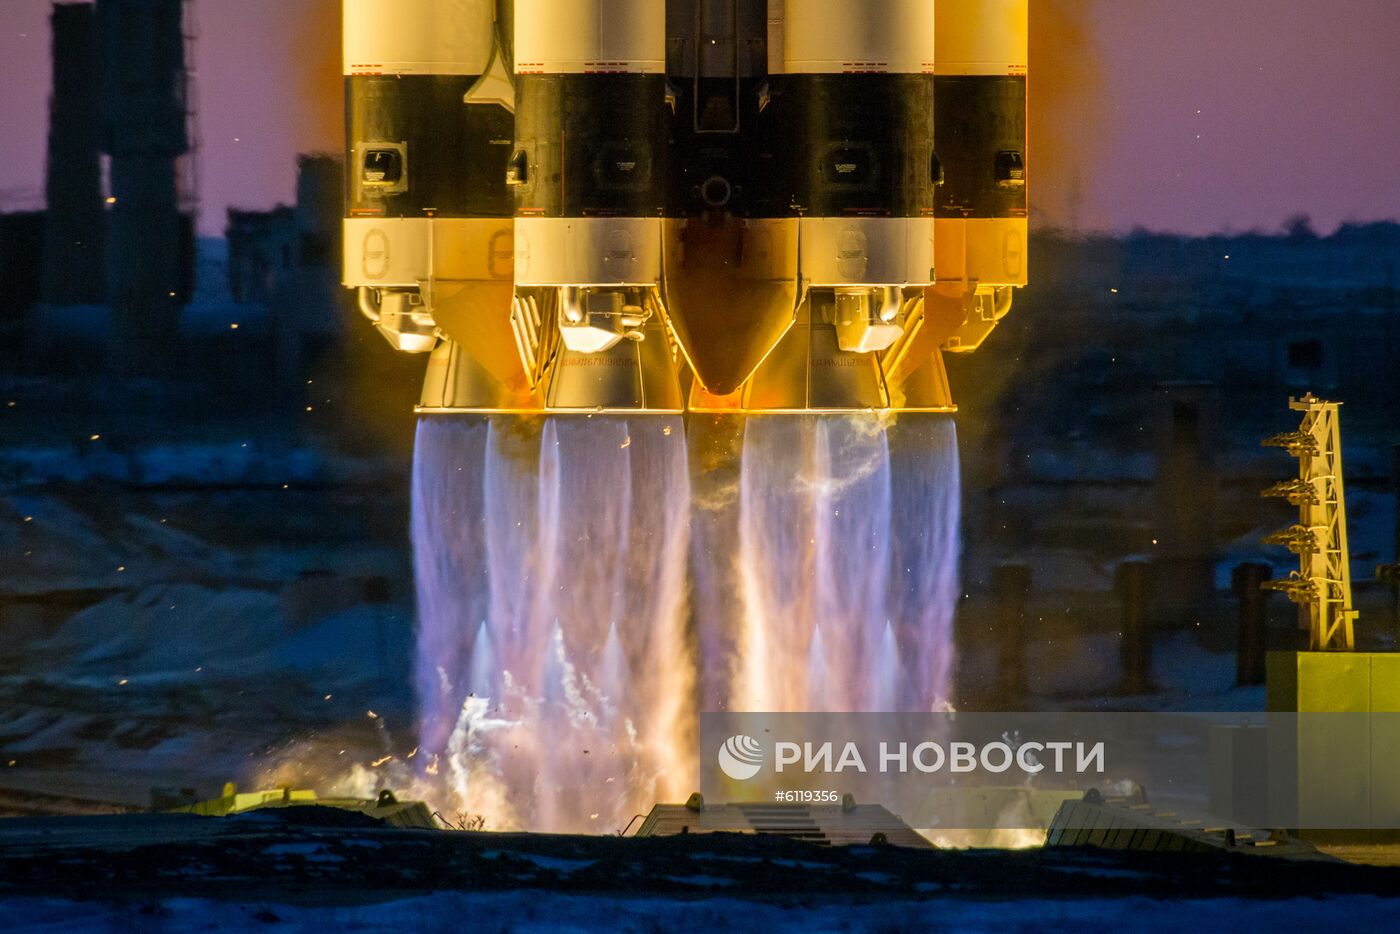 Пуск ракеты-носителя "Протон-М" с российским космическим аппаратом "Электро-Л" No3 с Байконура